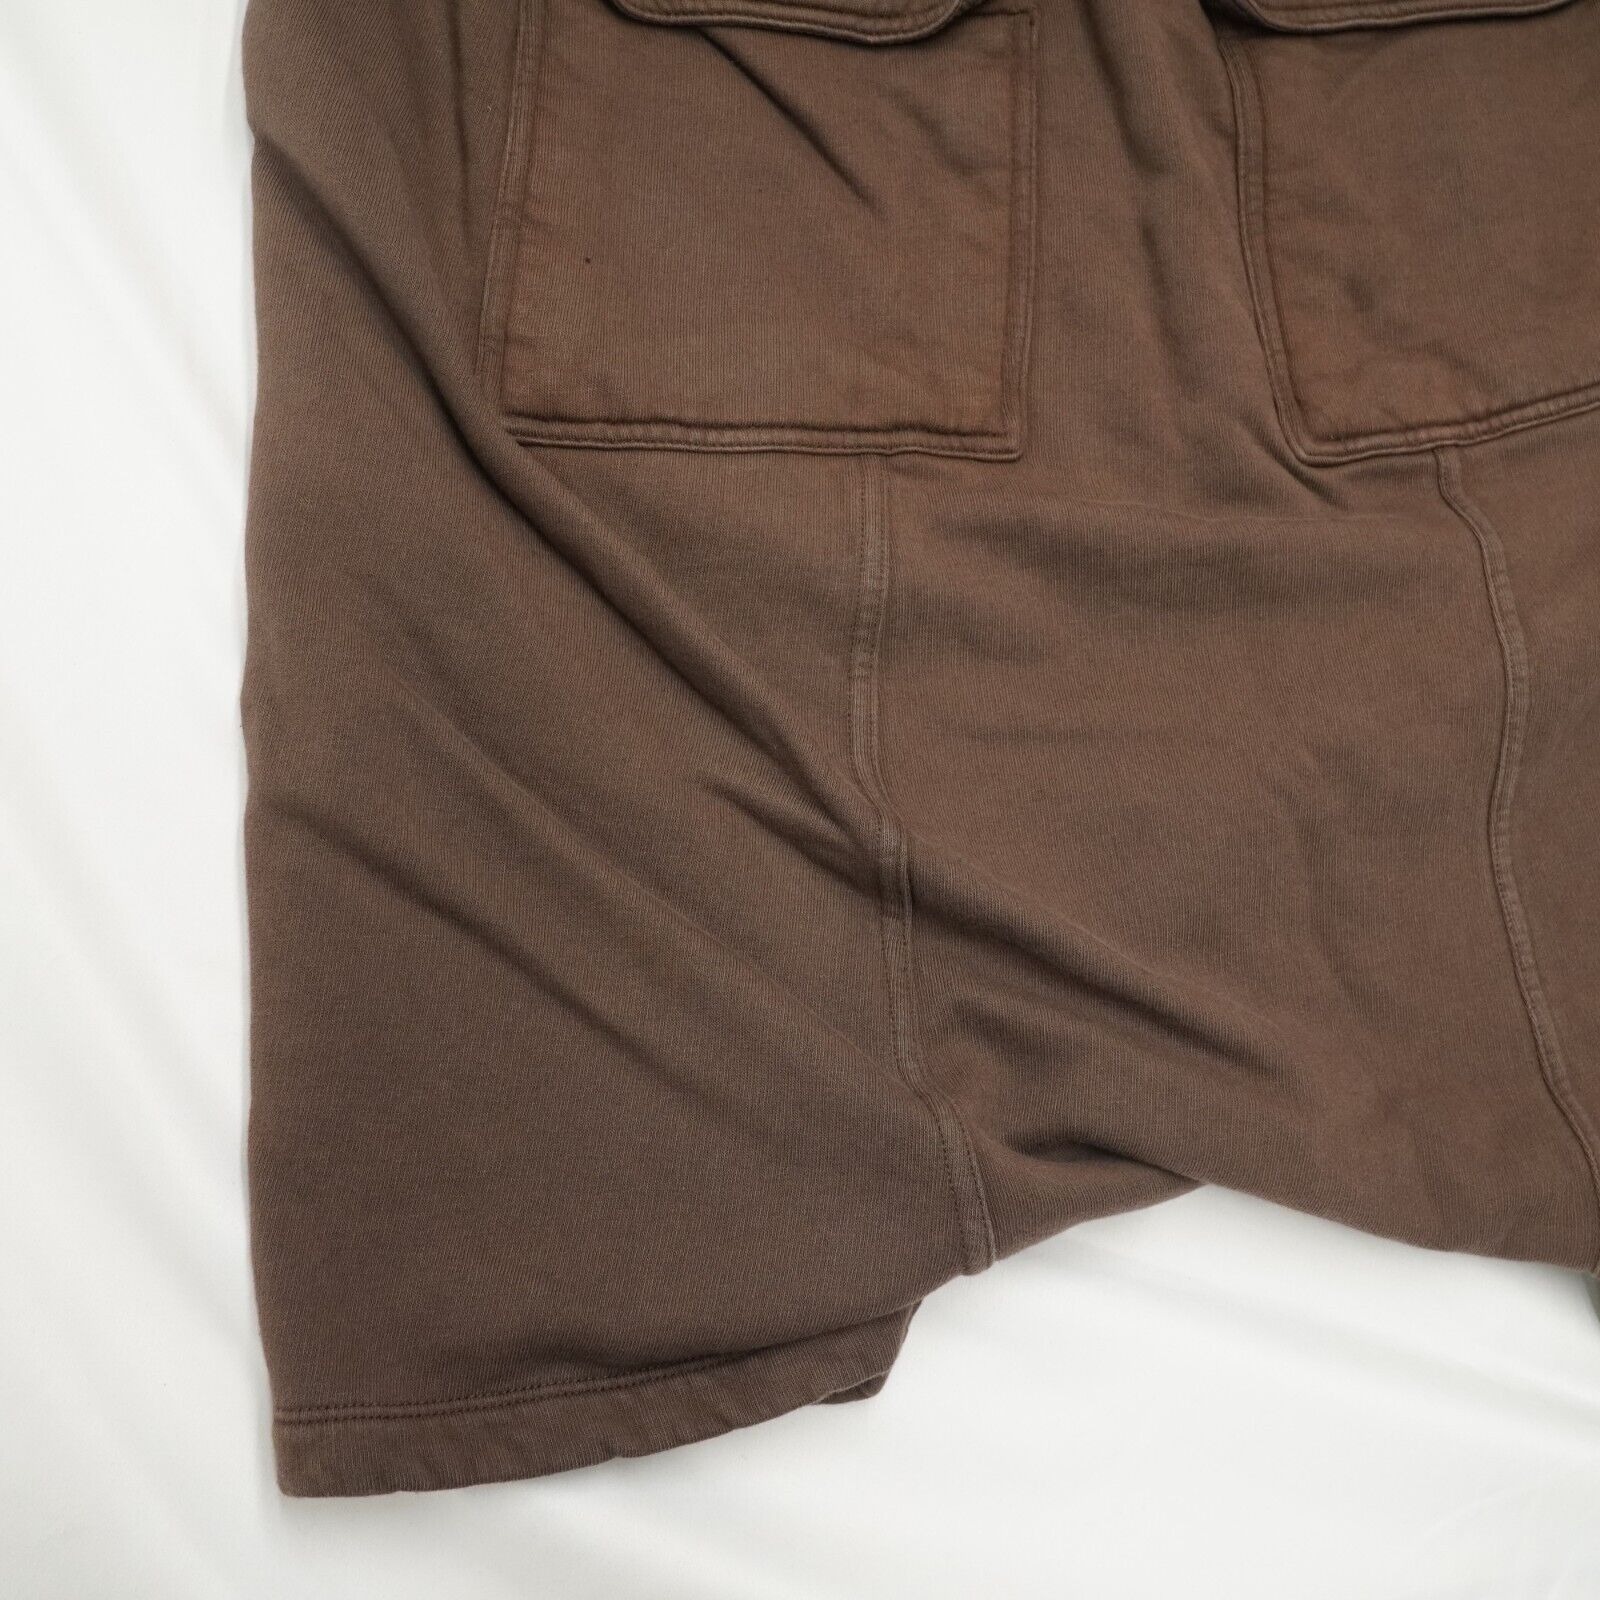 Rick Shorts Drop Crotch Cotton Macassar Brown Large - 18